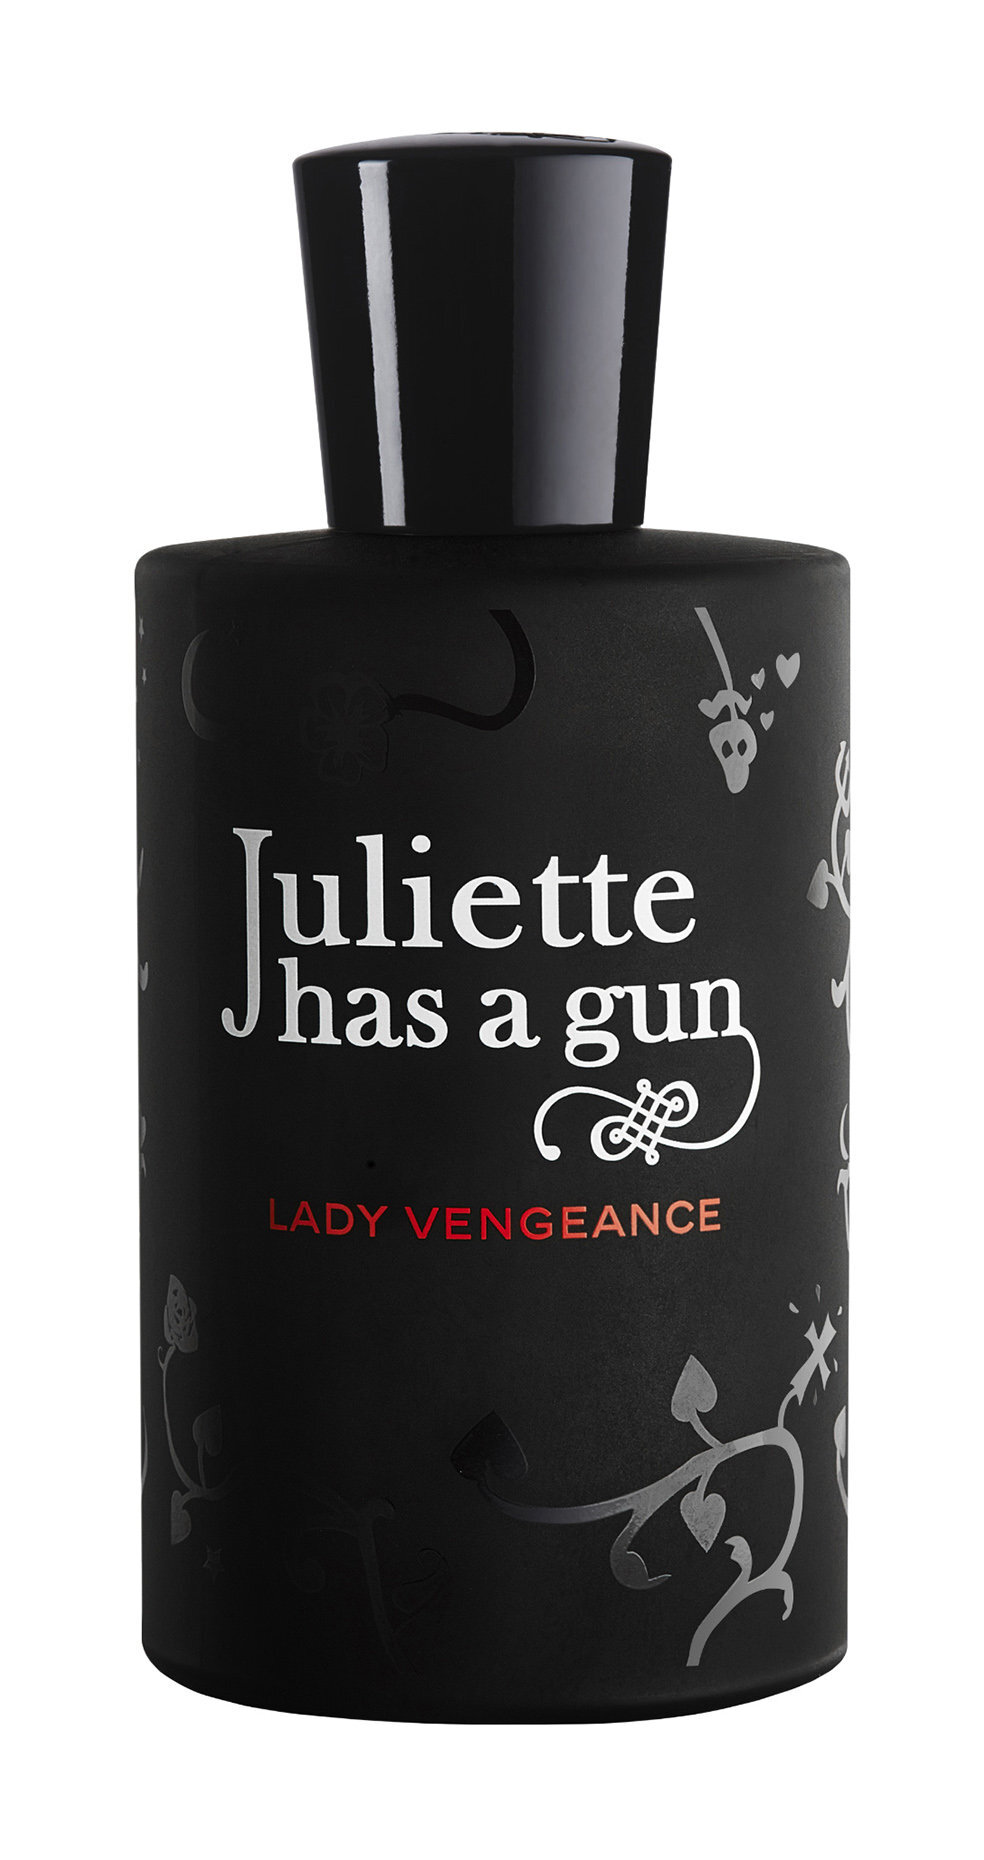 Джульет парфюм. Духи Juliette has a Gun. Juliette has a Gun Lady Vengeance парфюмерная вода (женские) 100ml. Juliette has a Gun Lady Vengeance.